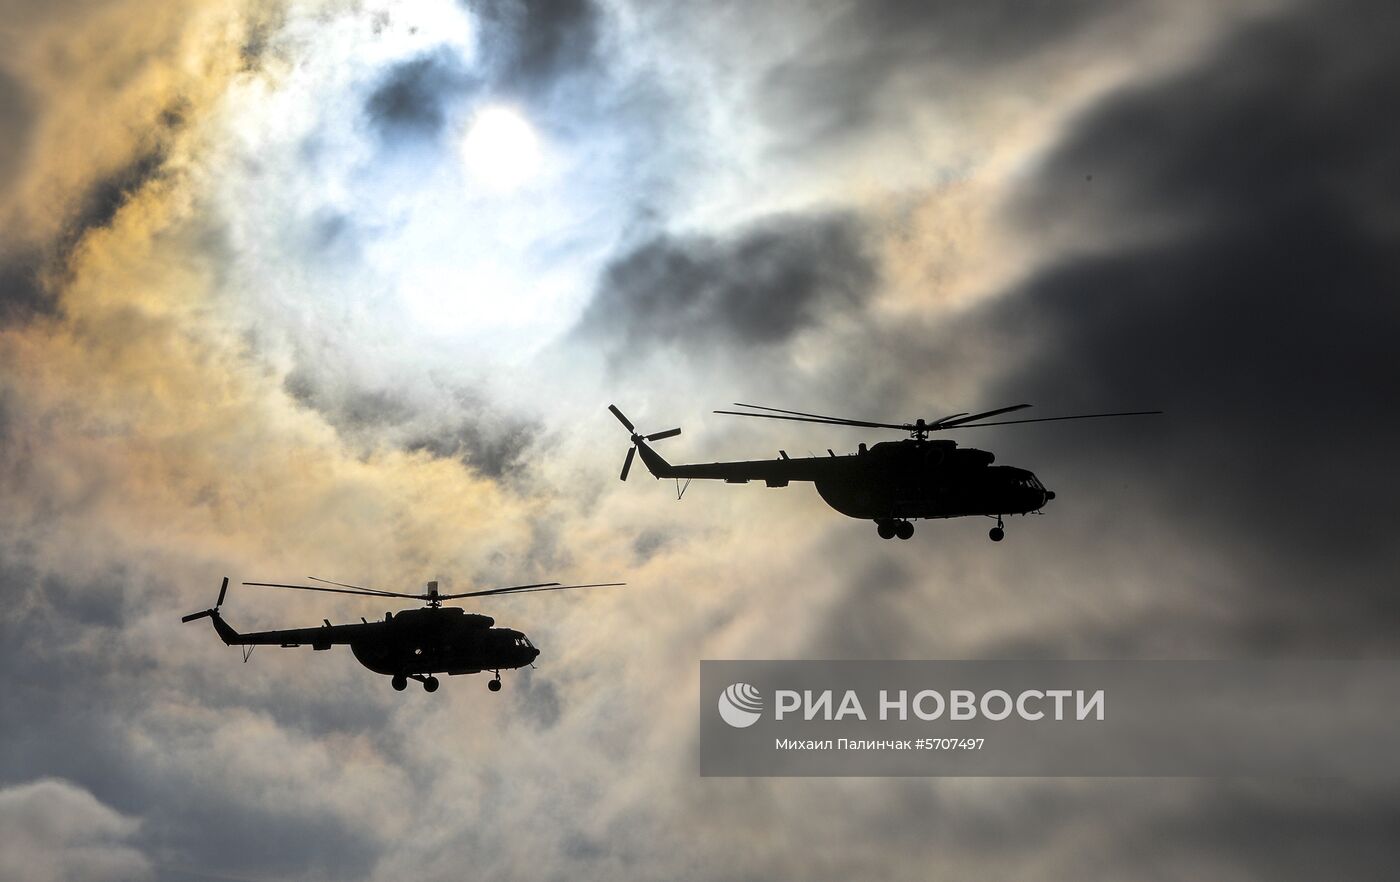 Президент Украины П. Порошенко посетил тактические учения десантно-штурмовых войск в Житомирской области